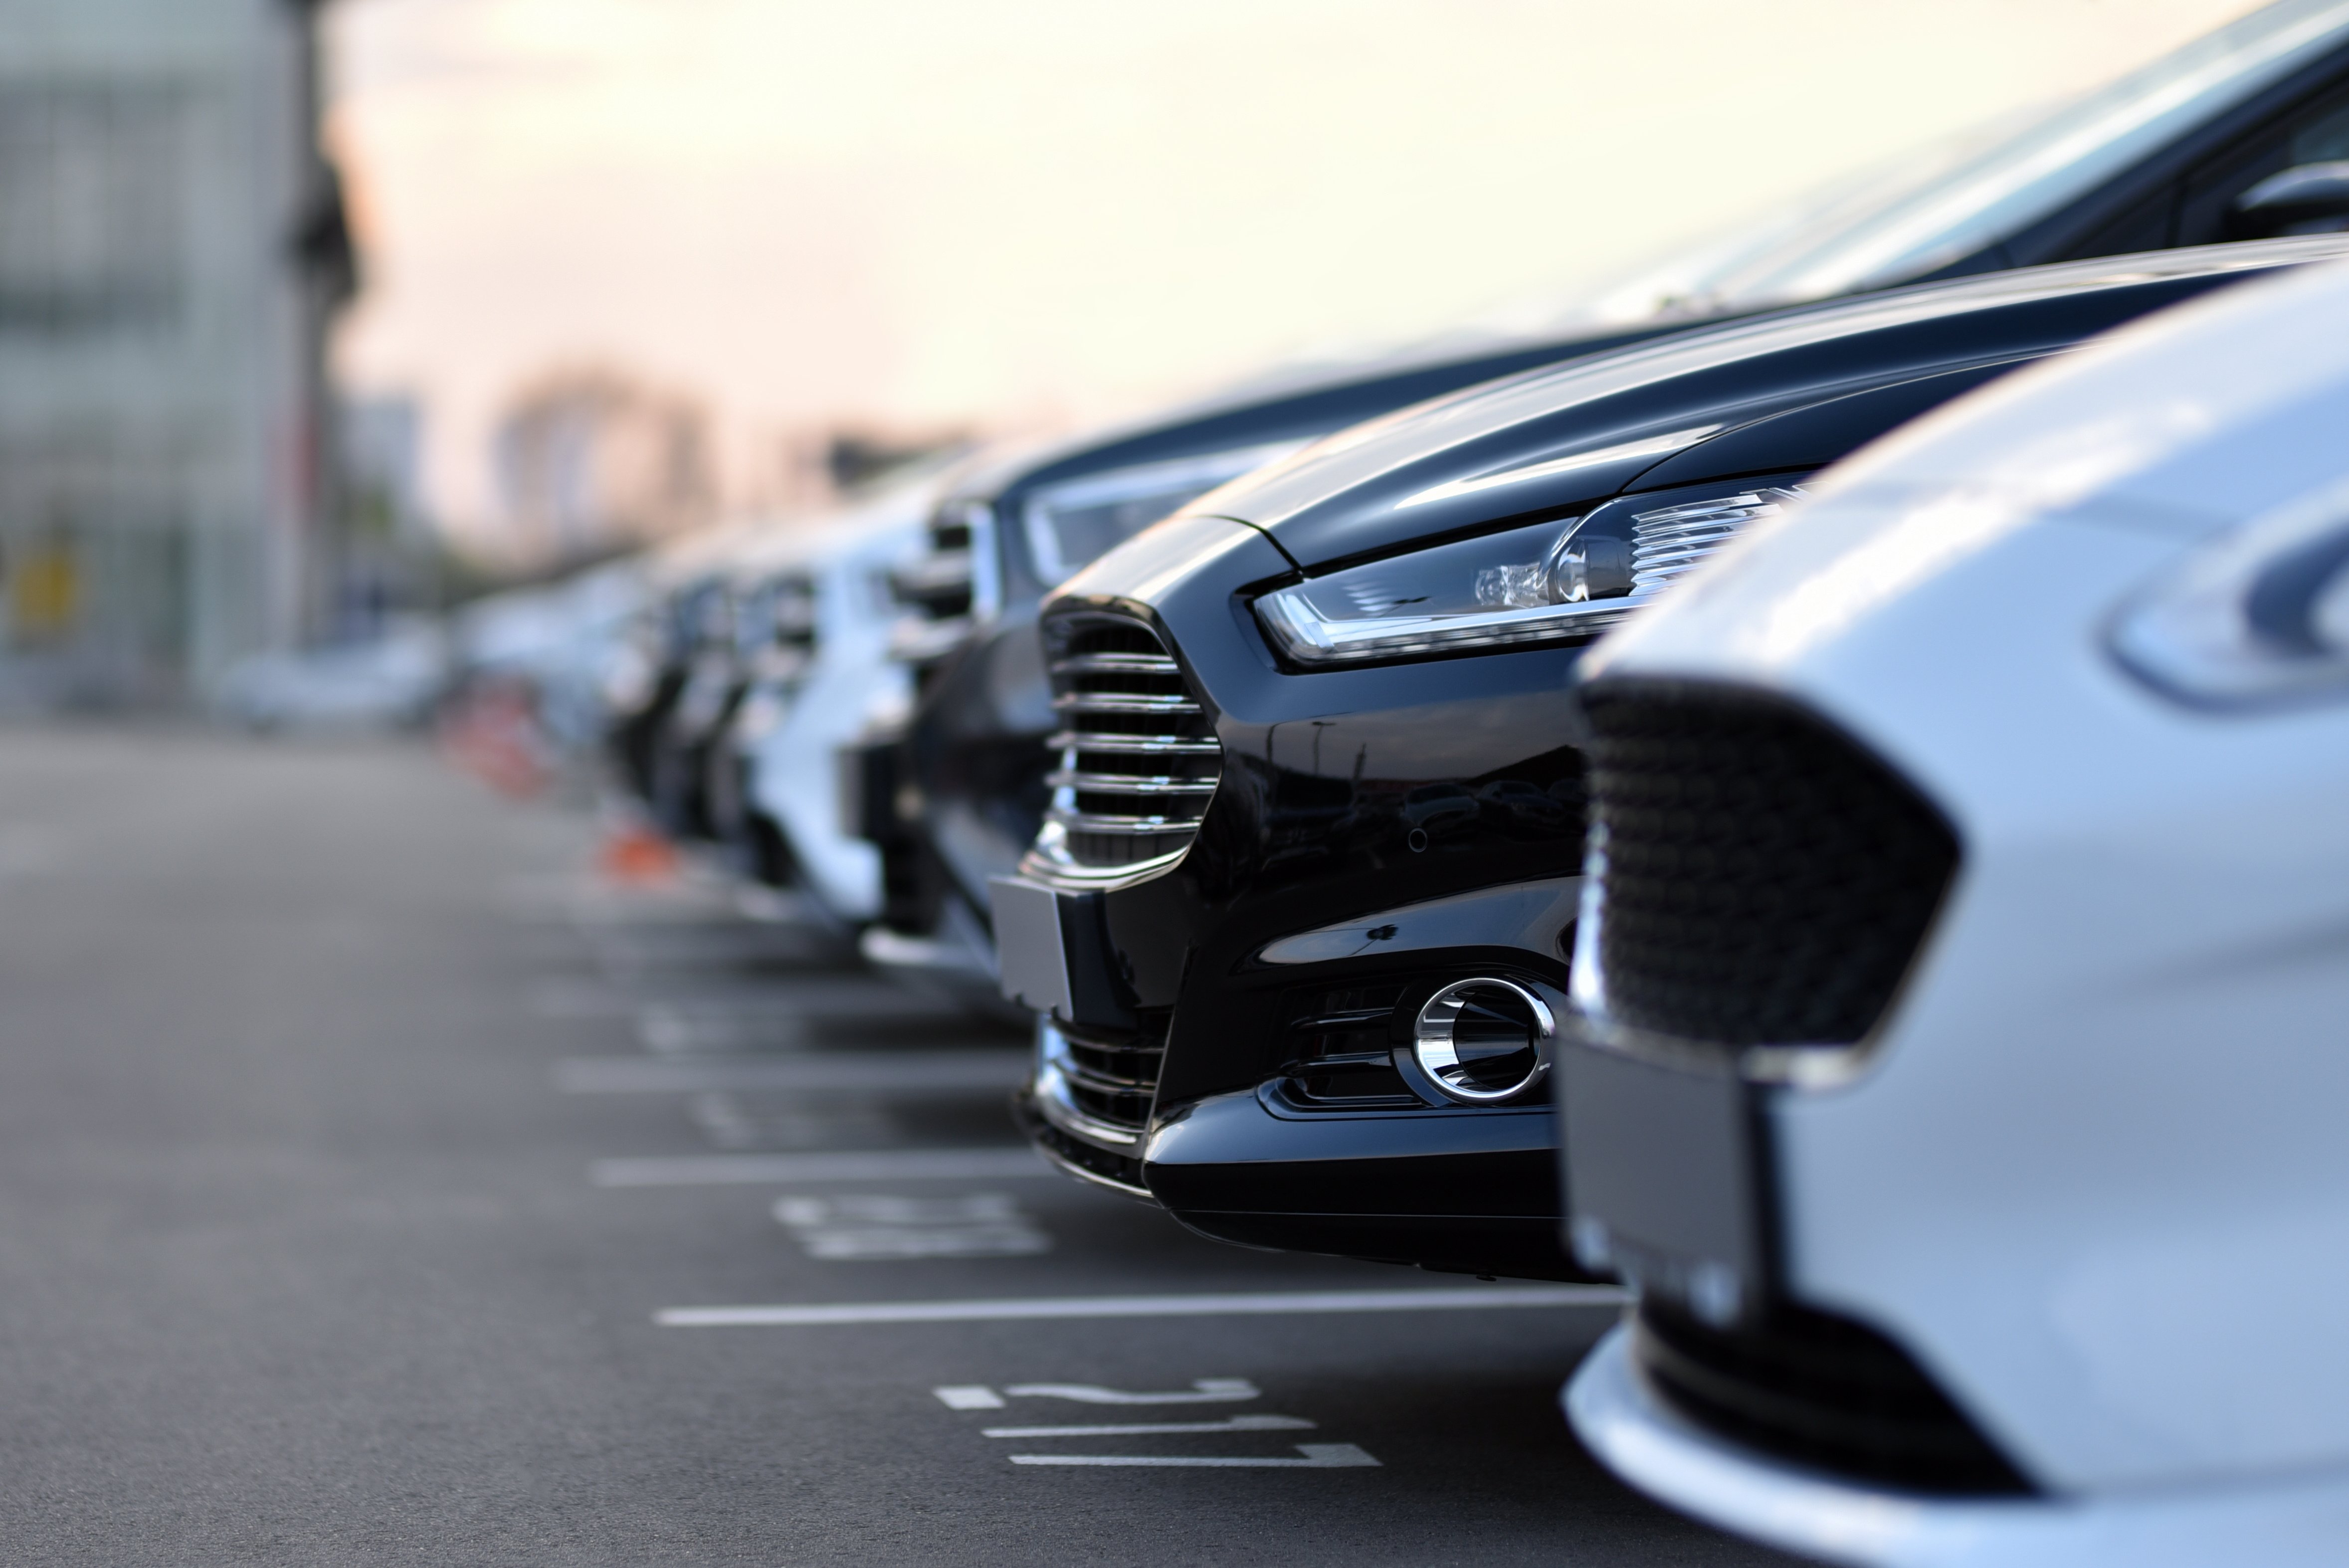 Снизятся или вырастут цены на подержанные автомобили? Наши прогнозы на 2023 год